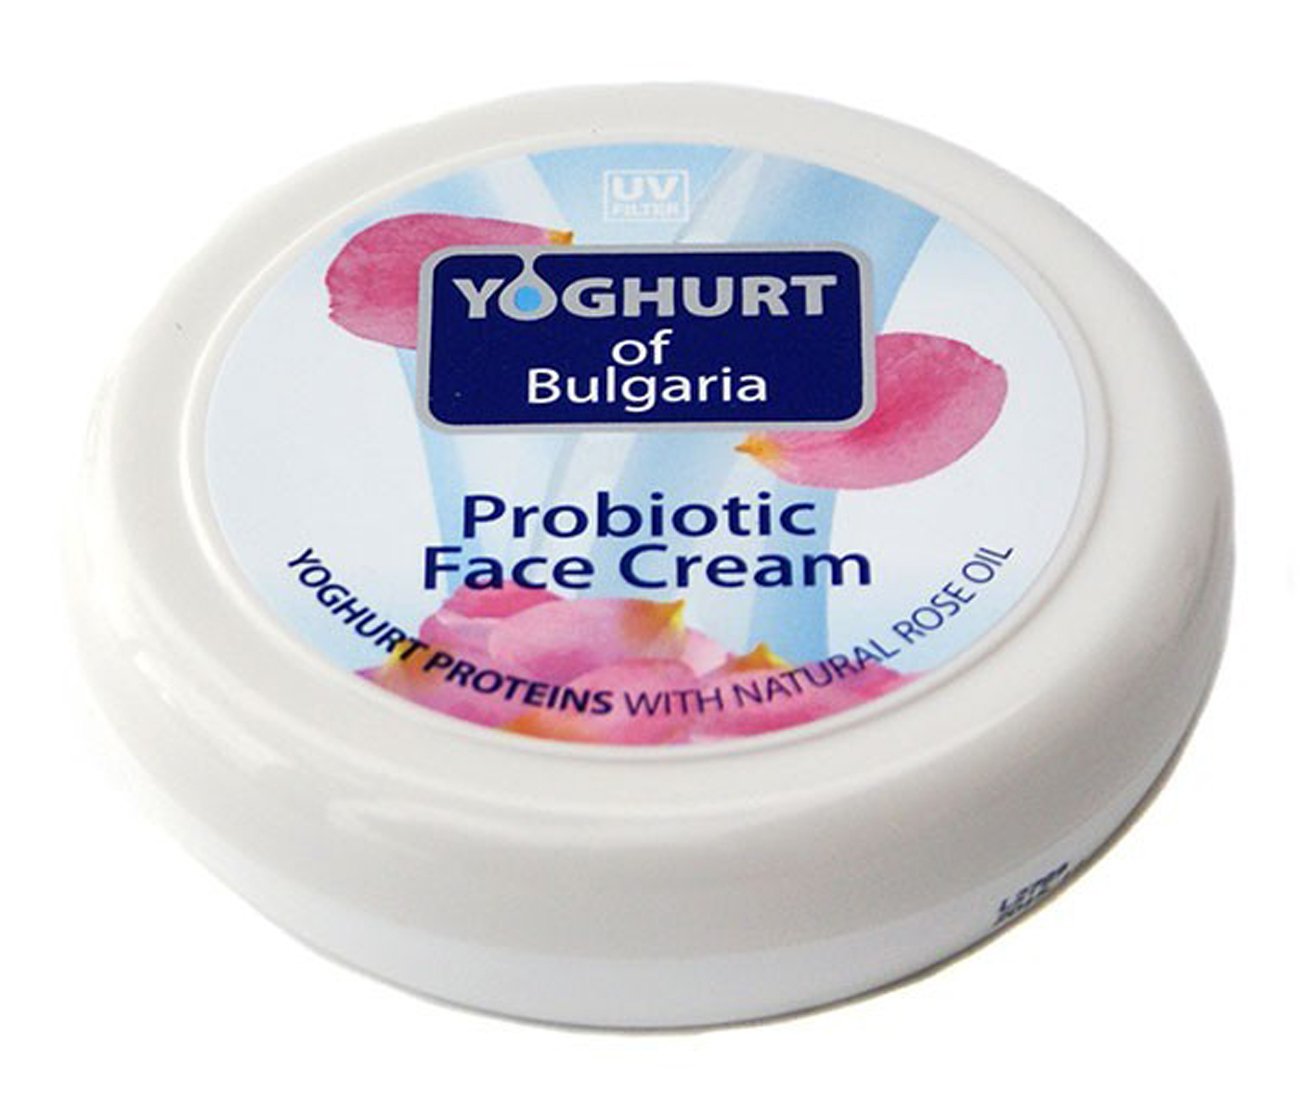 PROBIOTIC FACE CREAM YOGHURT OF BULGARIA Rose Oil